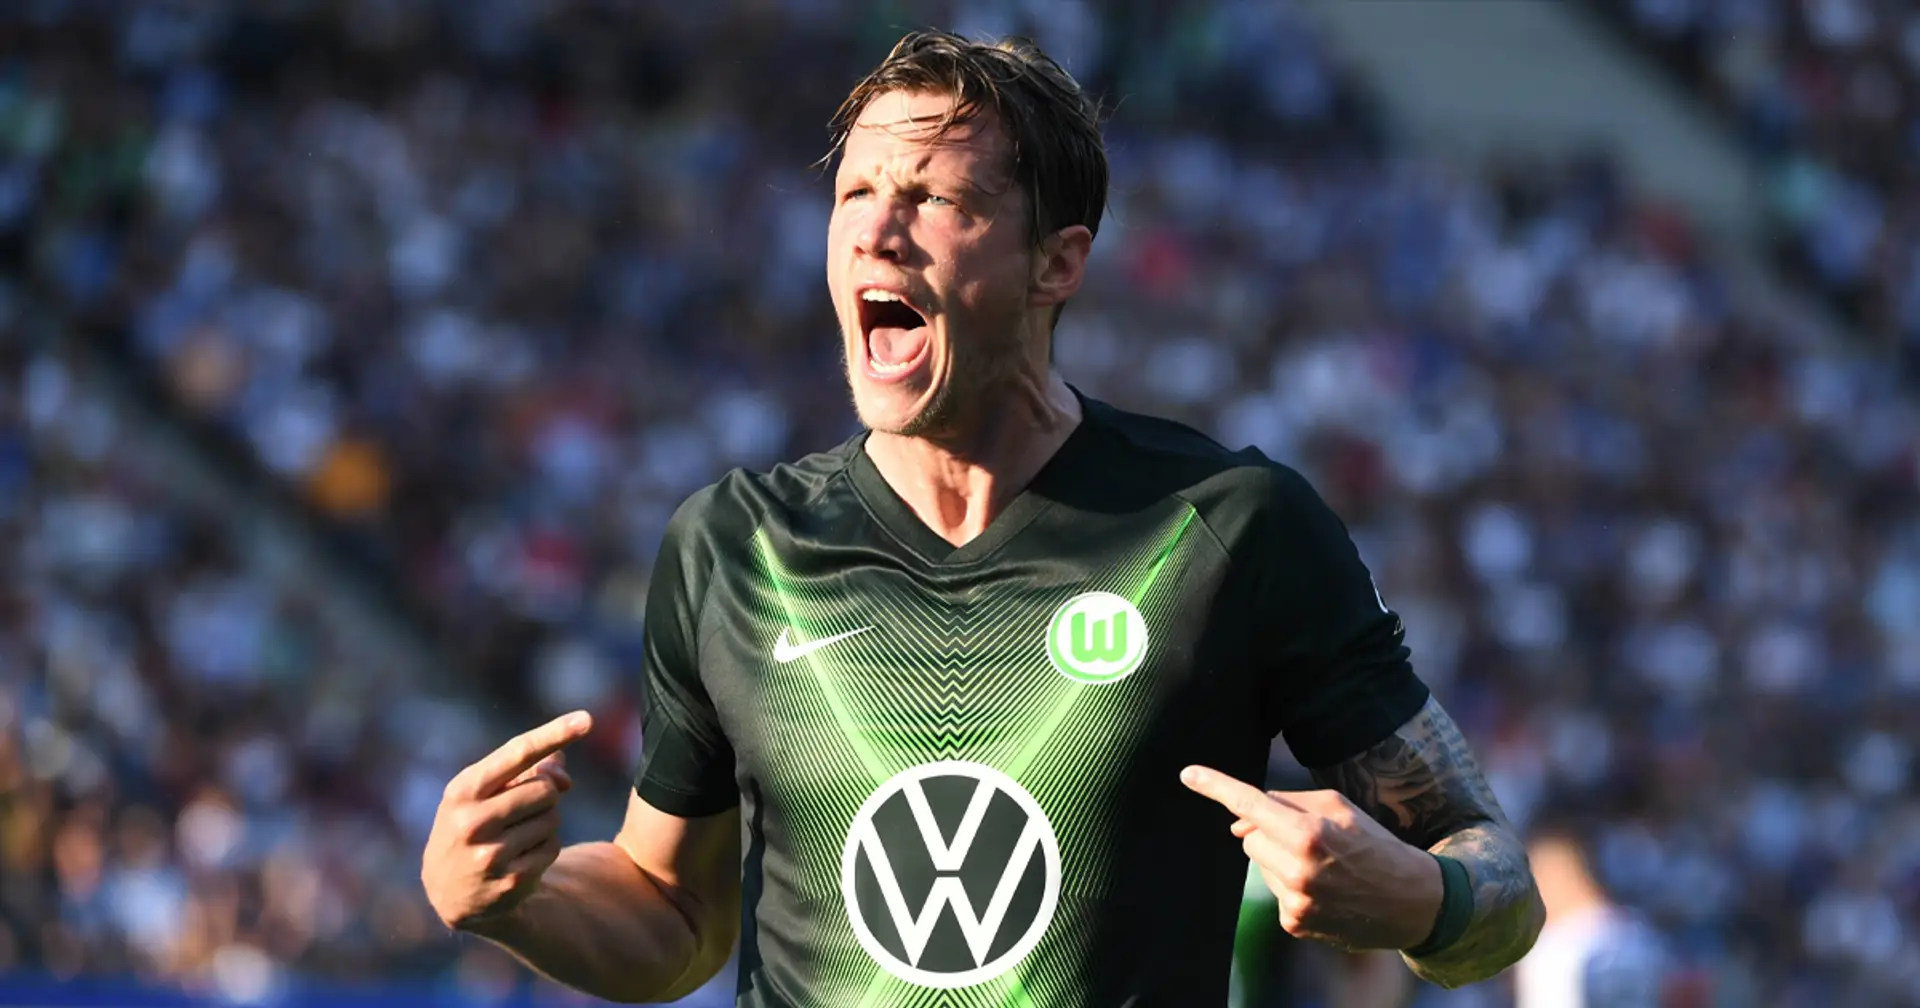 Weghorst über die Partie gegen Bayern: "Das wird ein geiles Spiel"